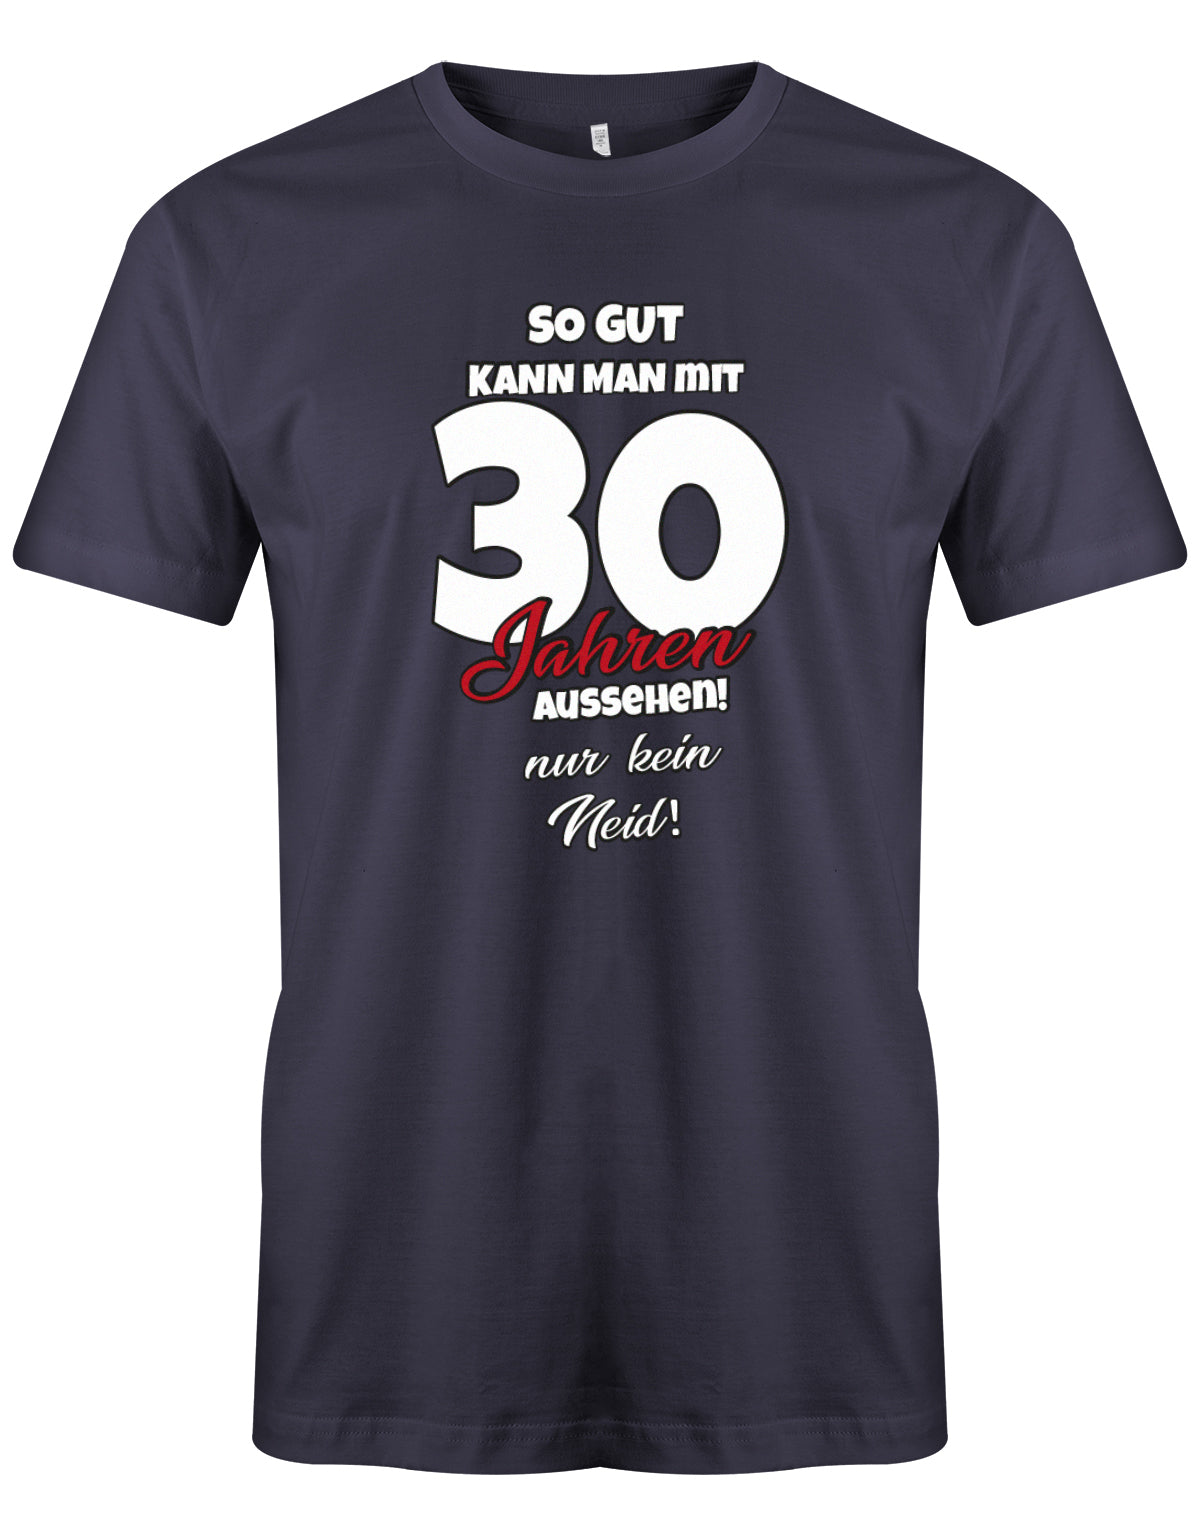 Lustiges T-Shirt zum 30 Geburtstag für den Mann Bedruckt mit So gut kann man mit 30 Jahren aussehen! Nur kein Navy